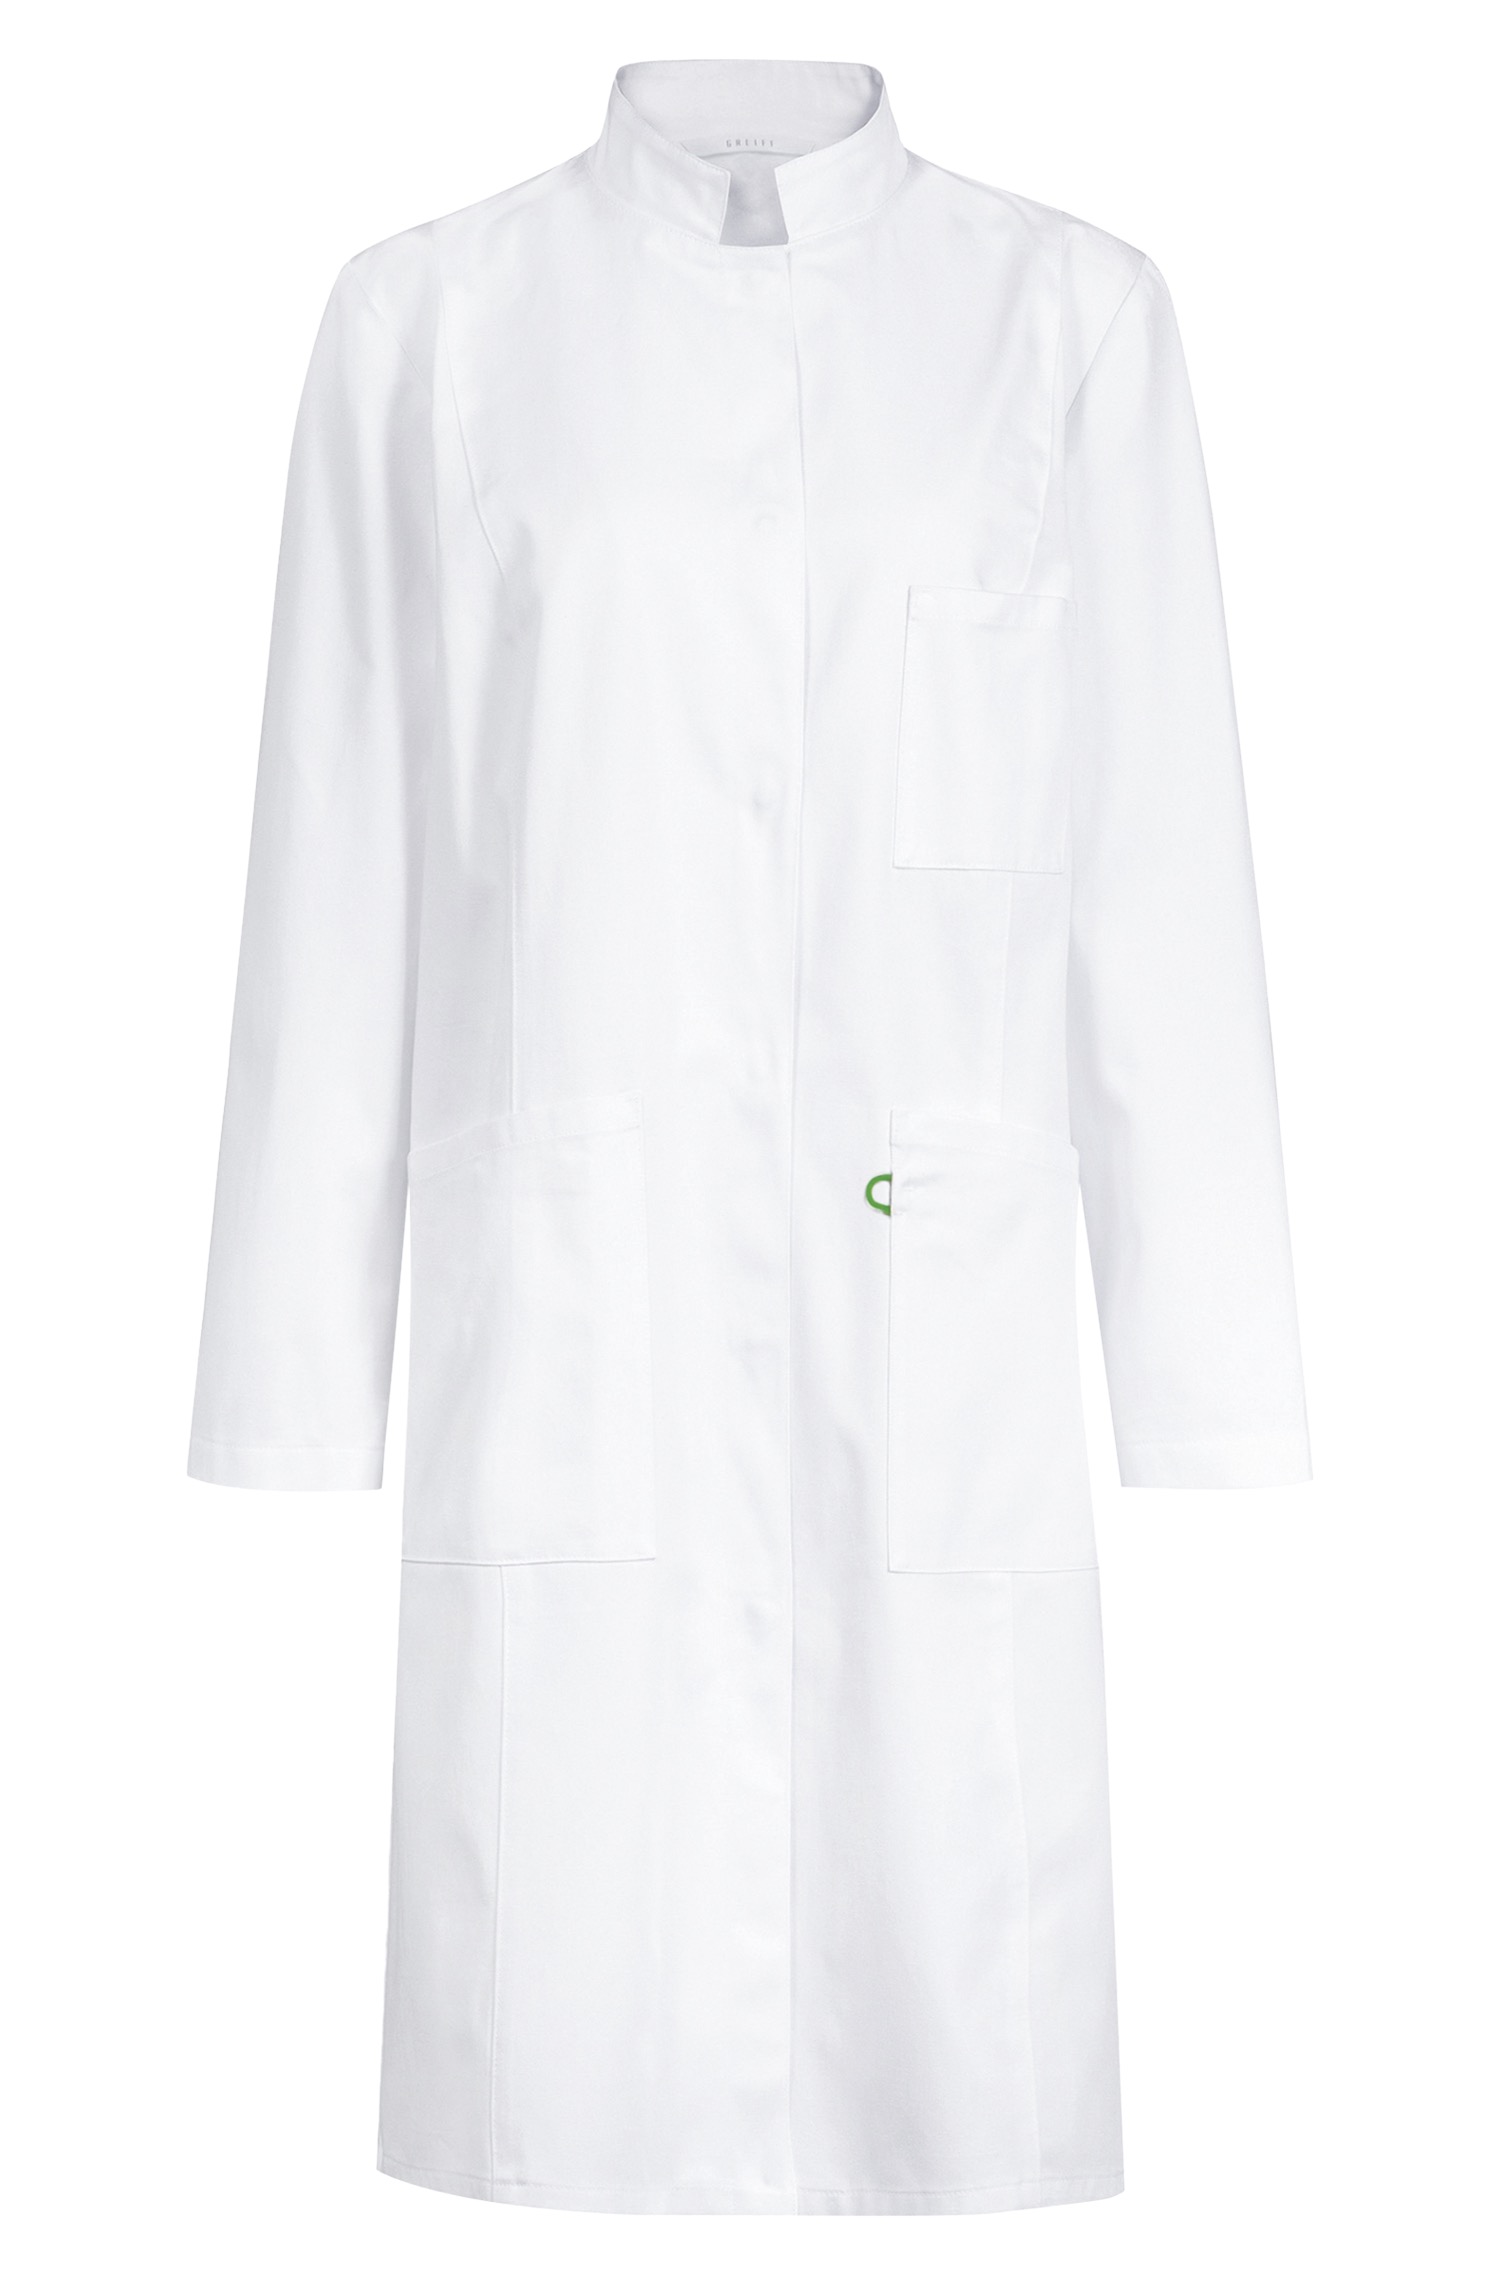 Premium Ladies Lab Coat Cotton Regular Fit 5023 Greiff® White 32